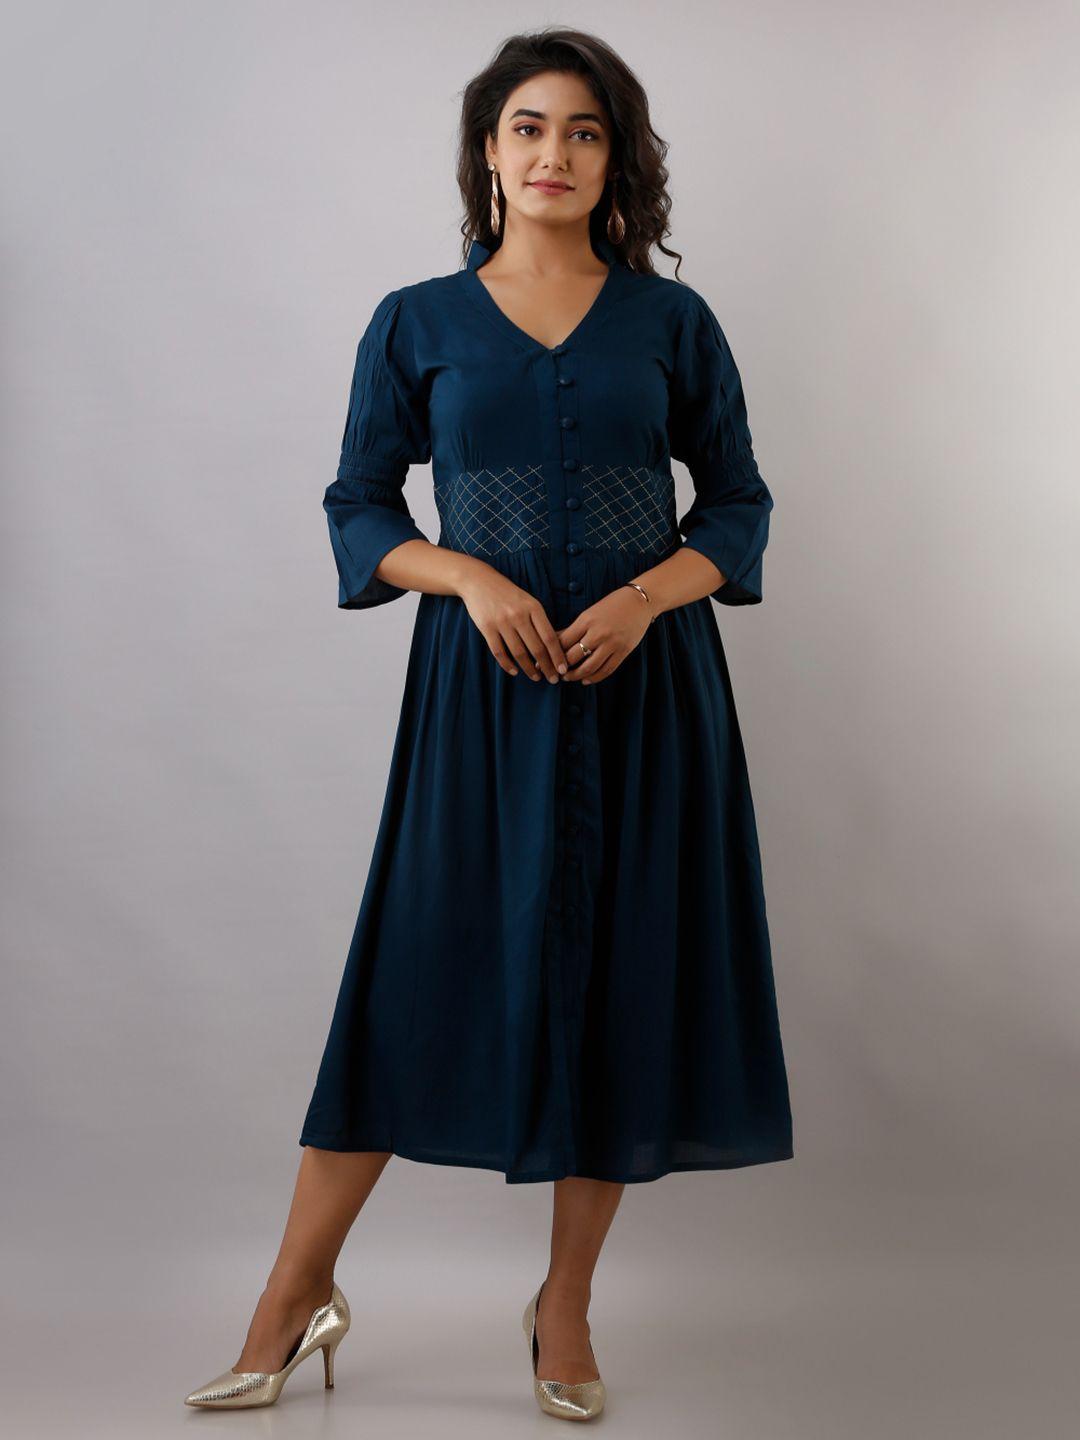 kalini teal blue maxi mini dress